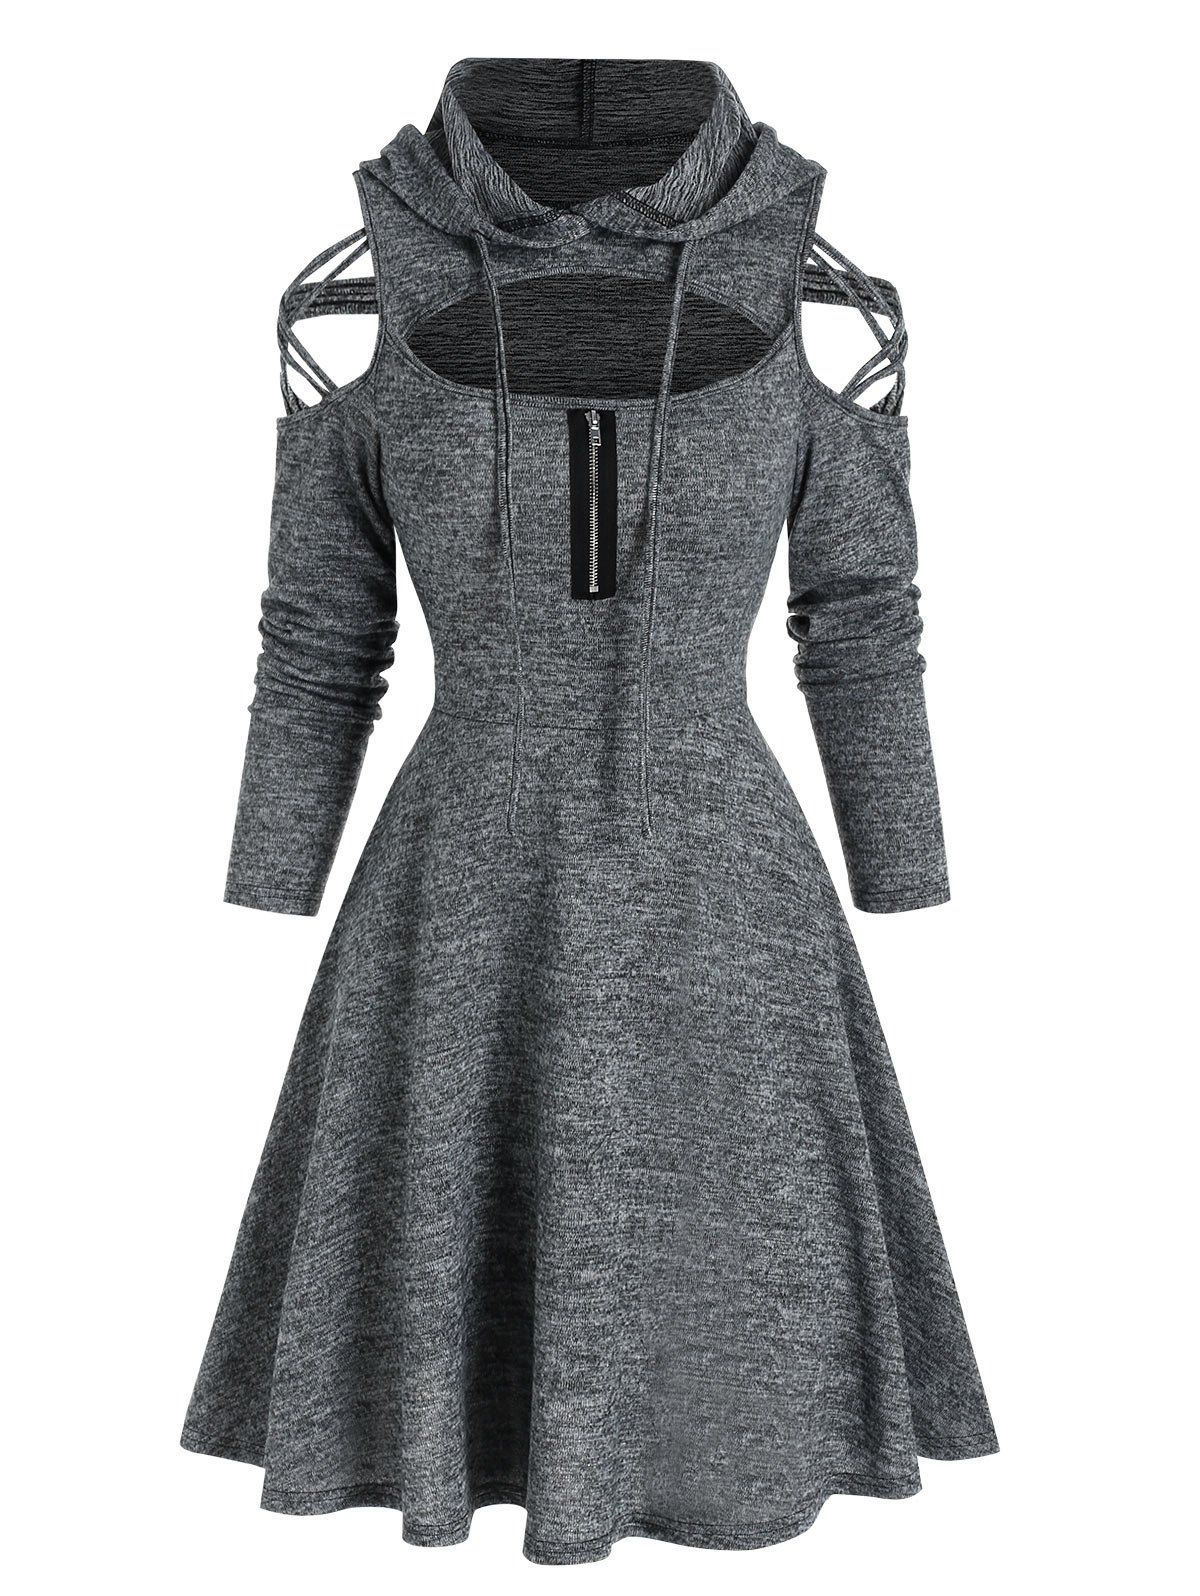 Cutout Crisscross Cold Shoulder Heathered Dress - DARK SLATE GREY XL